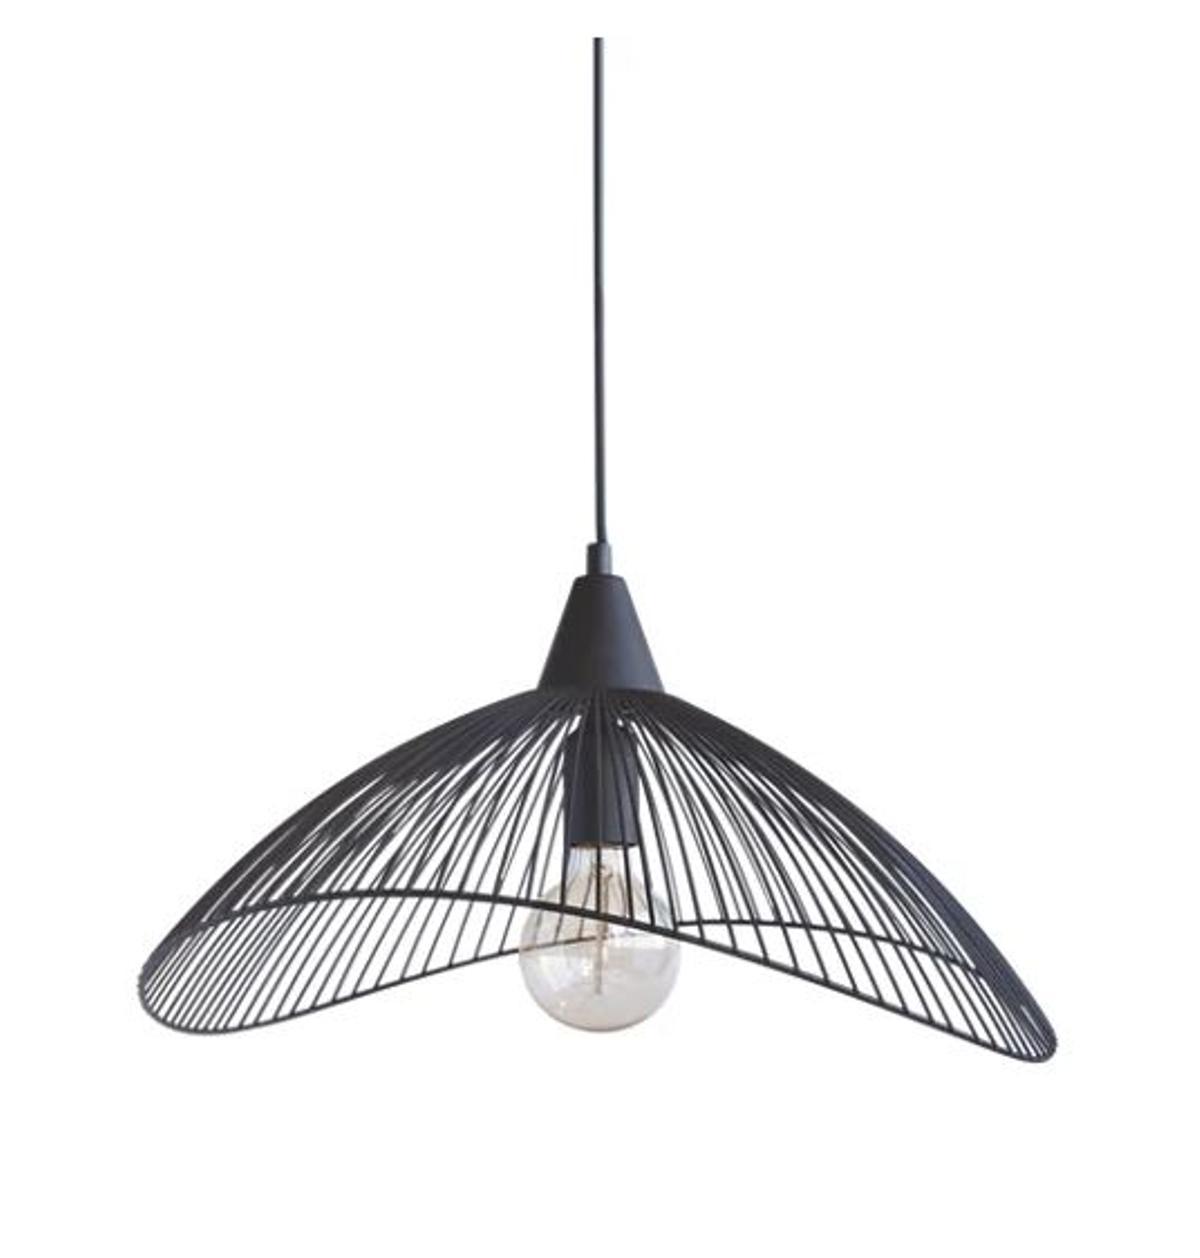 Lámparas Ikea | Las líneas ovaladas le dan un aspecto más original a este estilo de lámparas